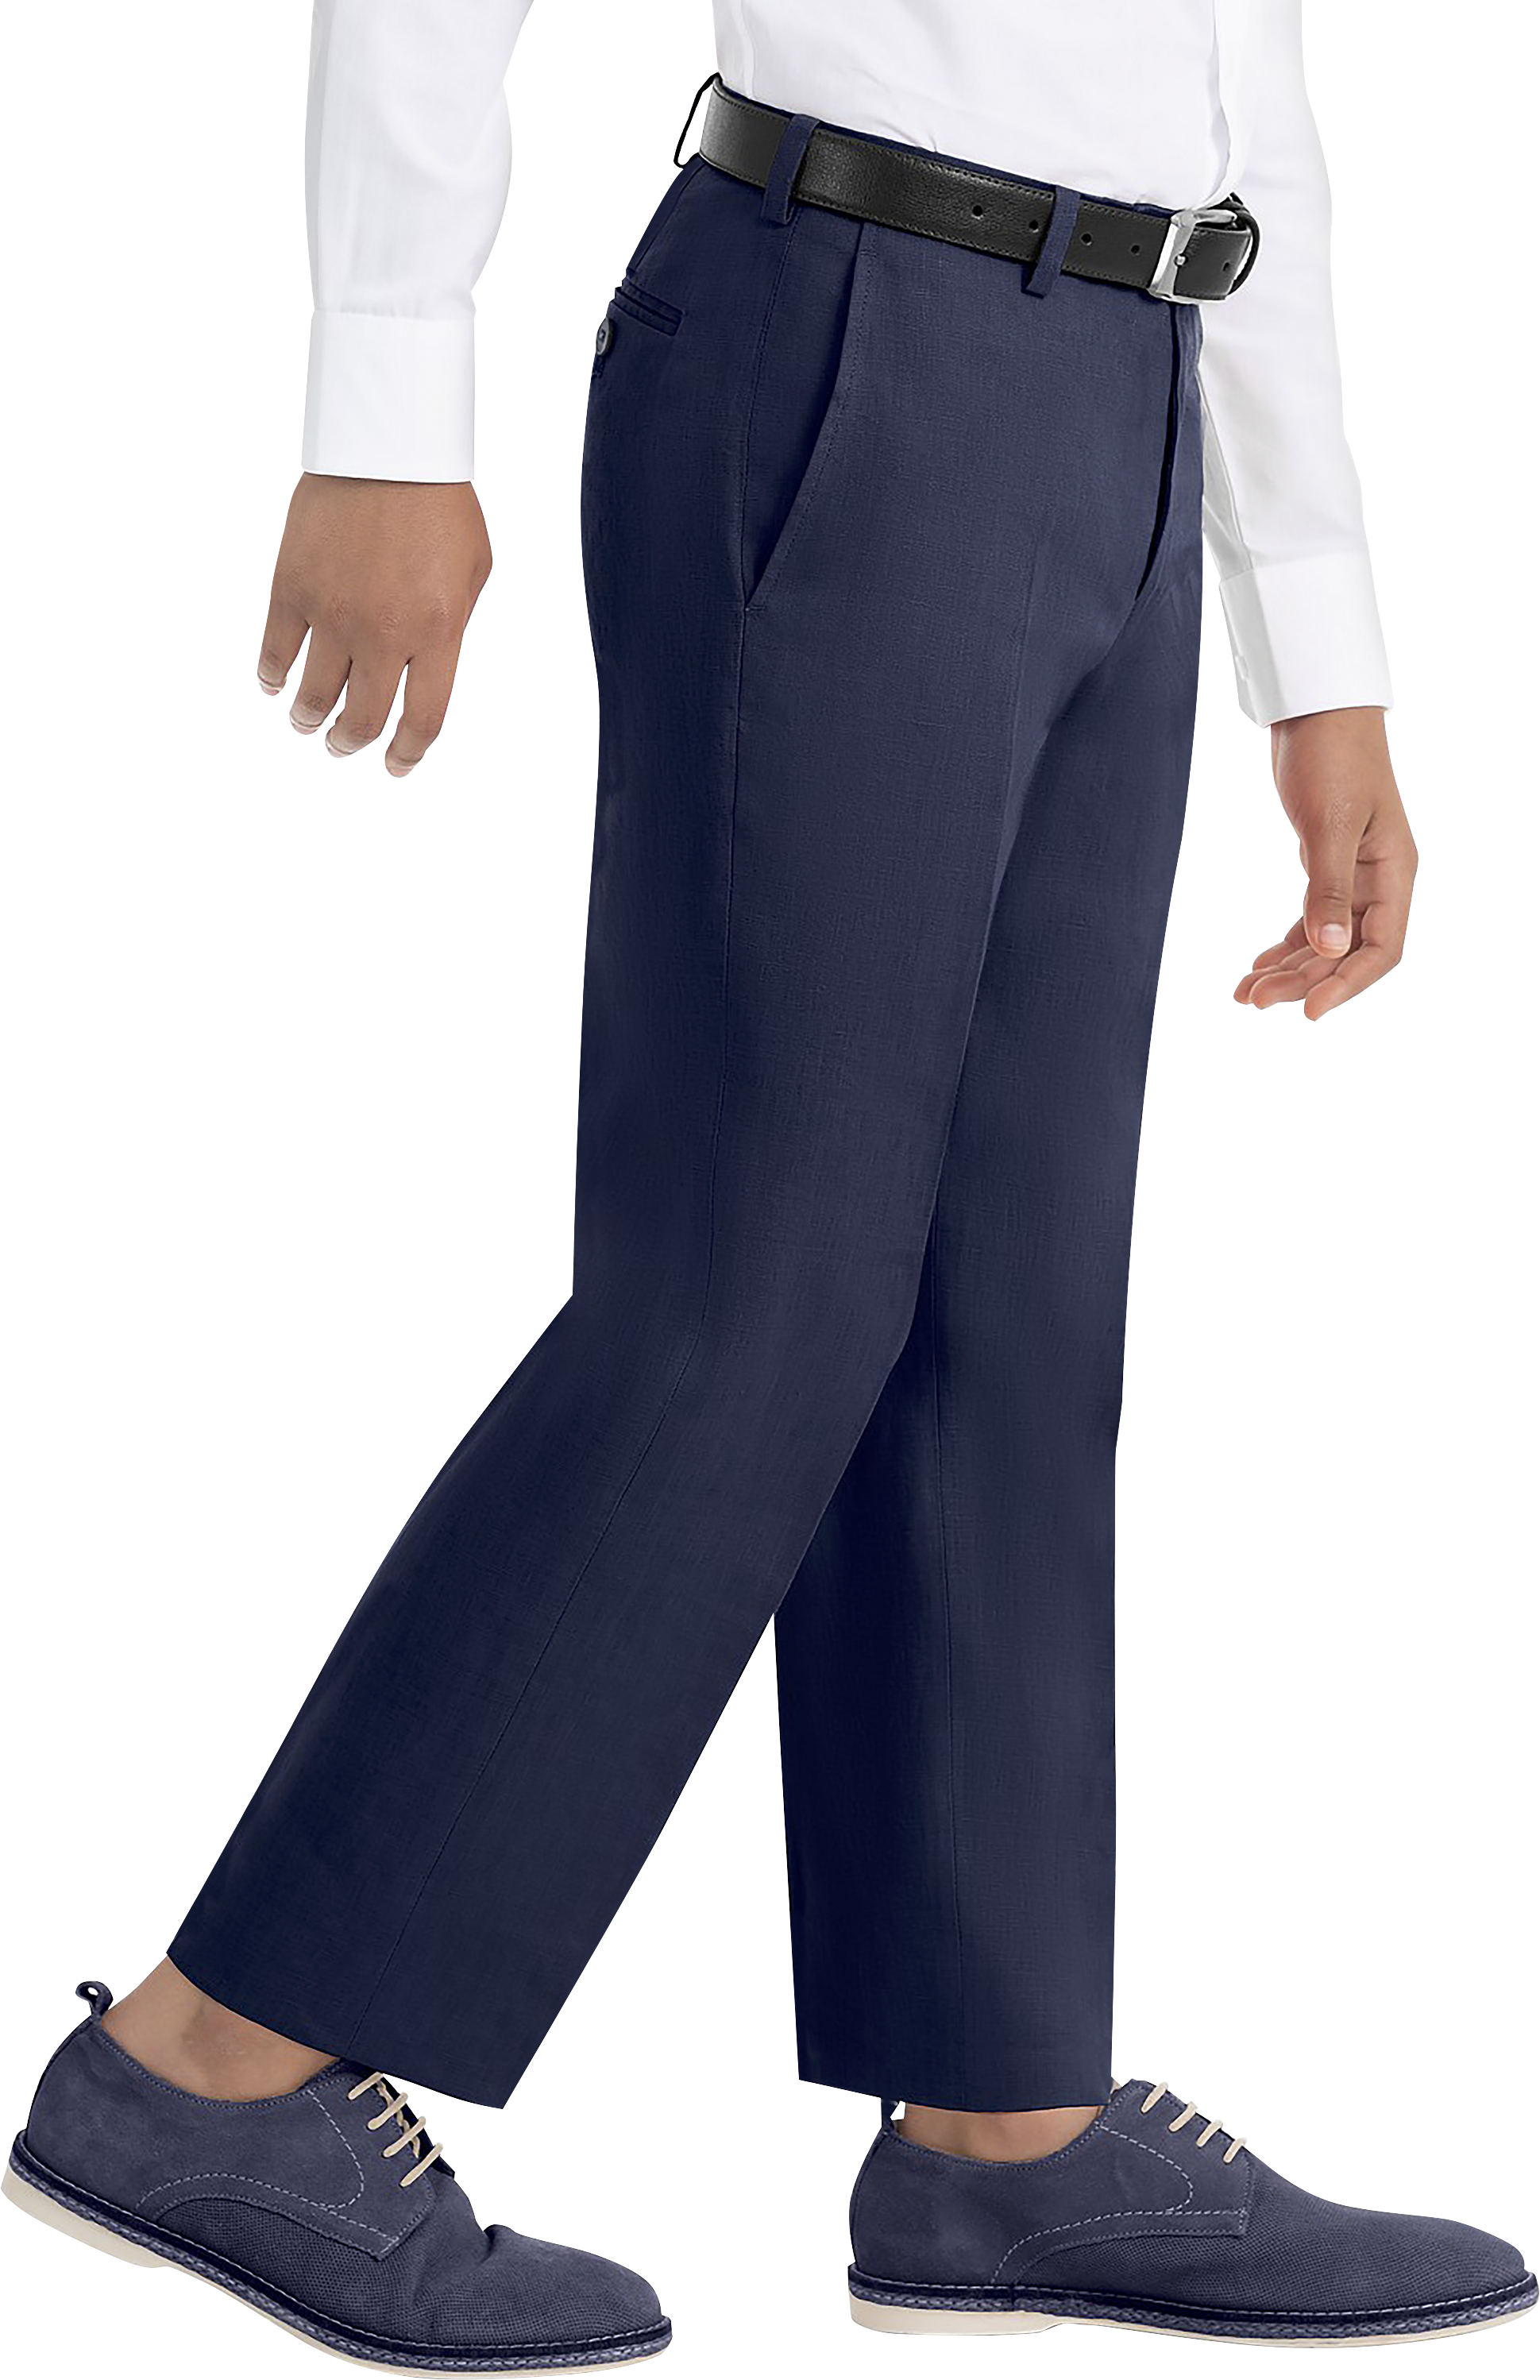 Boys (Sizes -) Suit Separates Pants